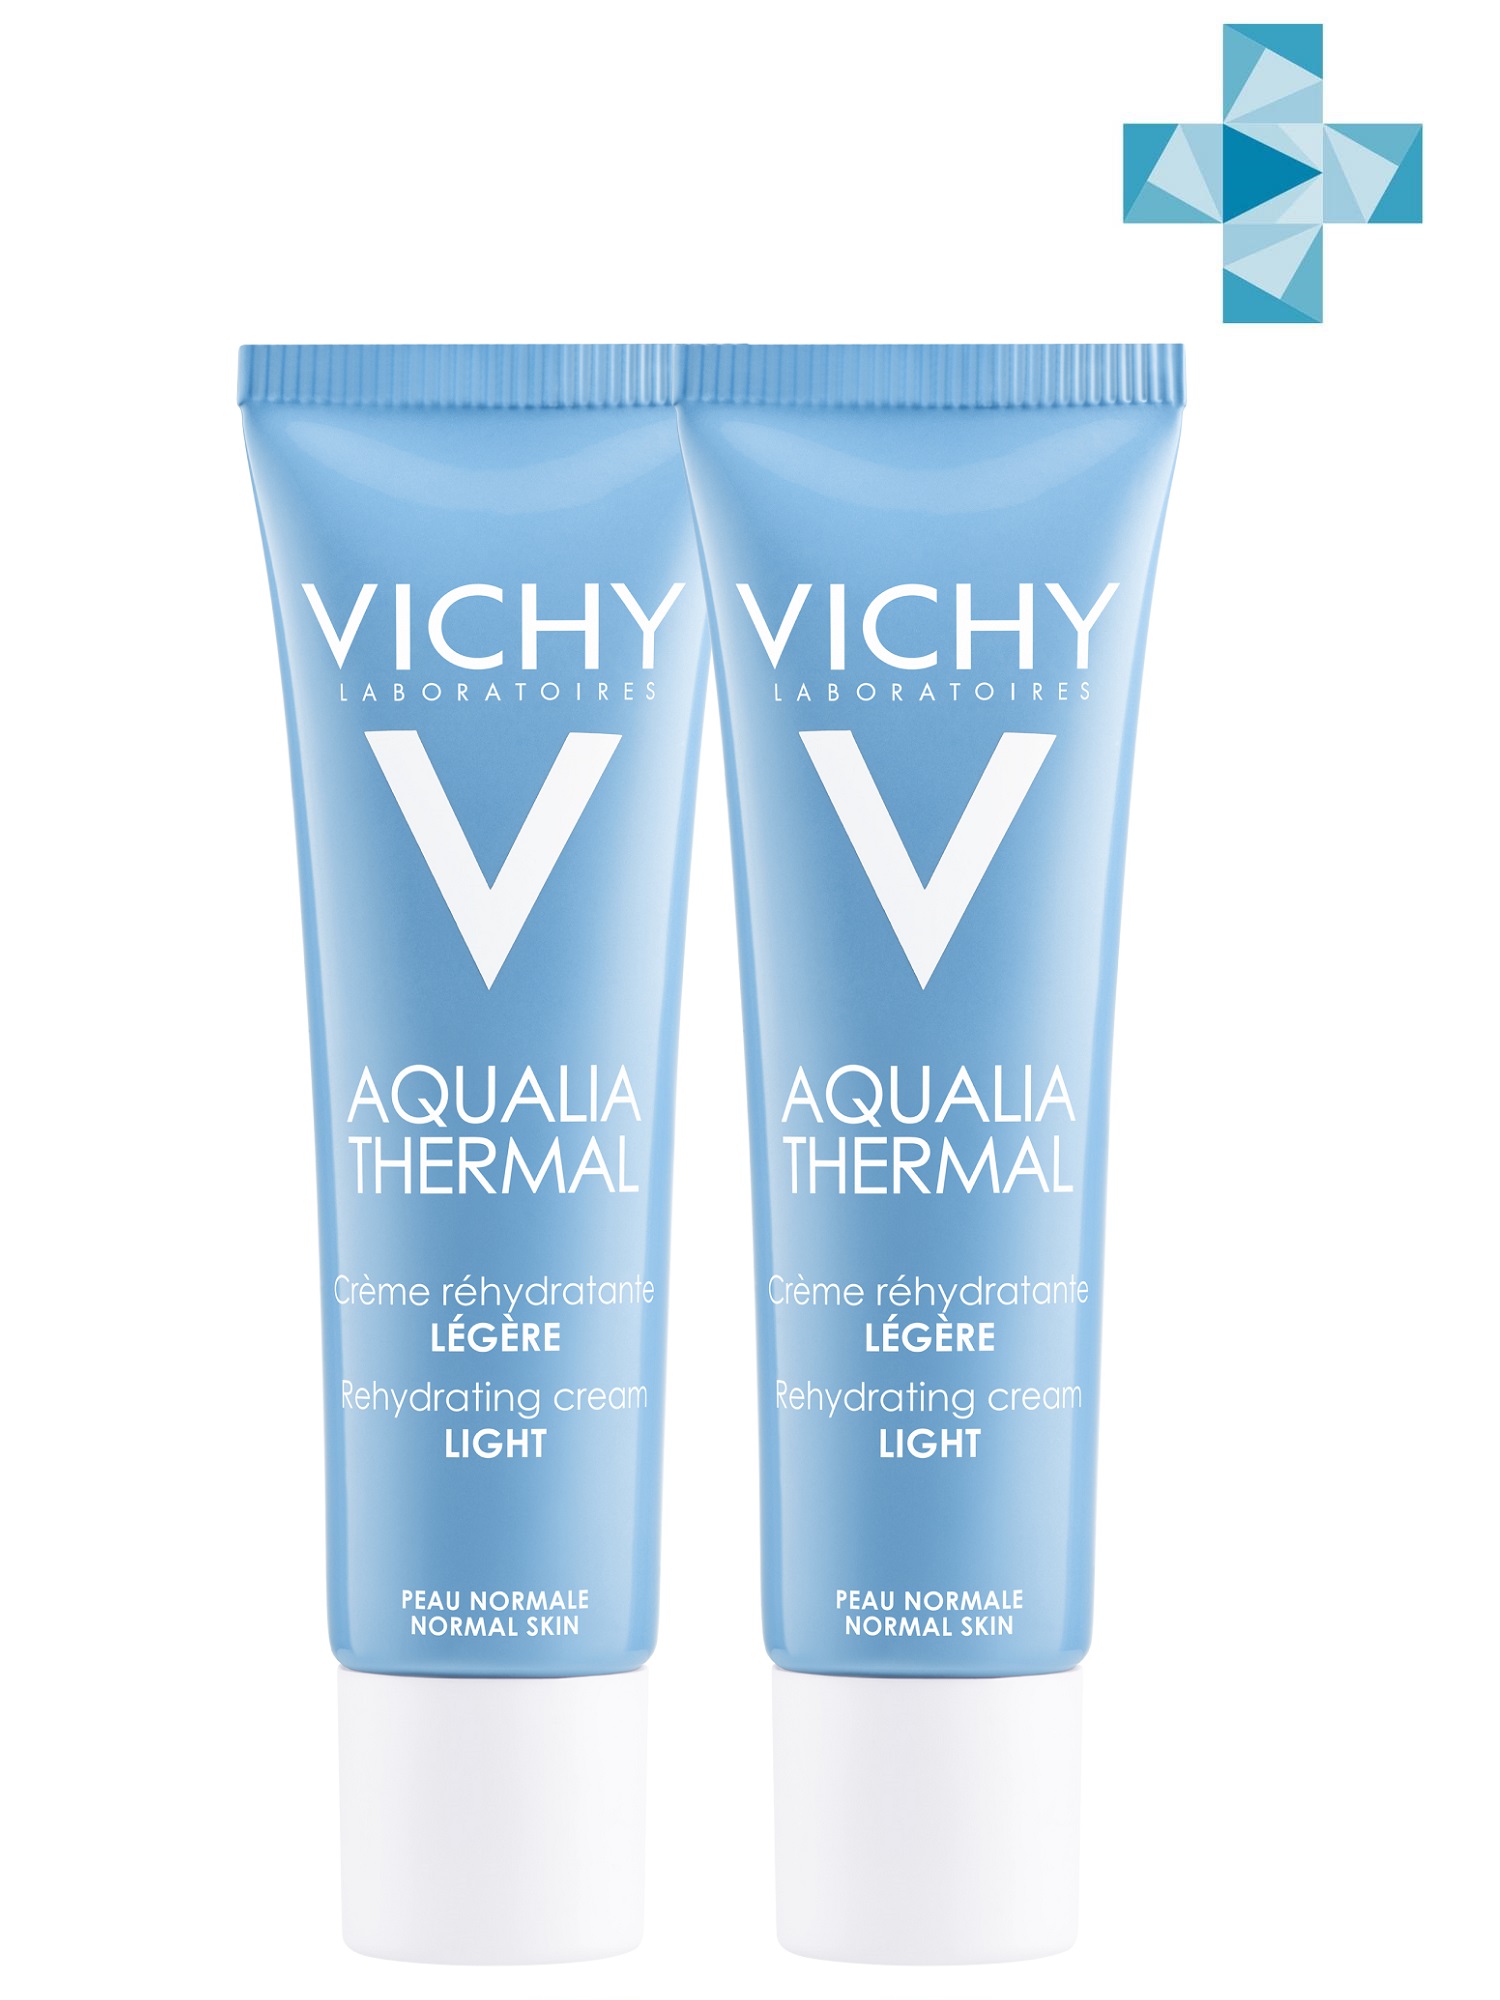 Vichy Комплект Аквалия Термаль Легкий крем для нормальной кожи, 2 шт. по 30 мл (Vichy, Aqualia Thermal)